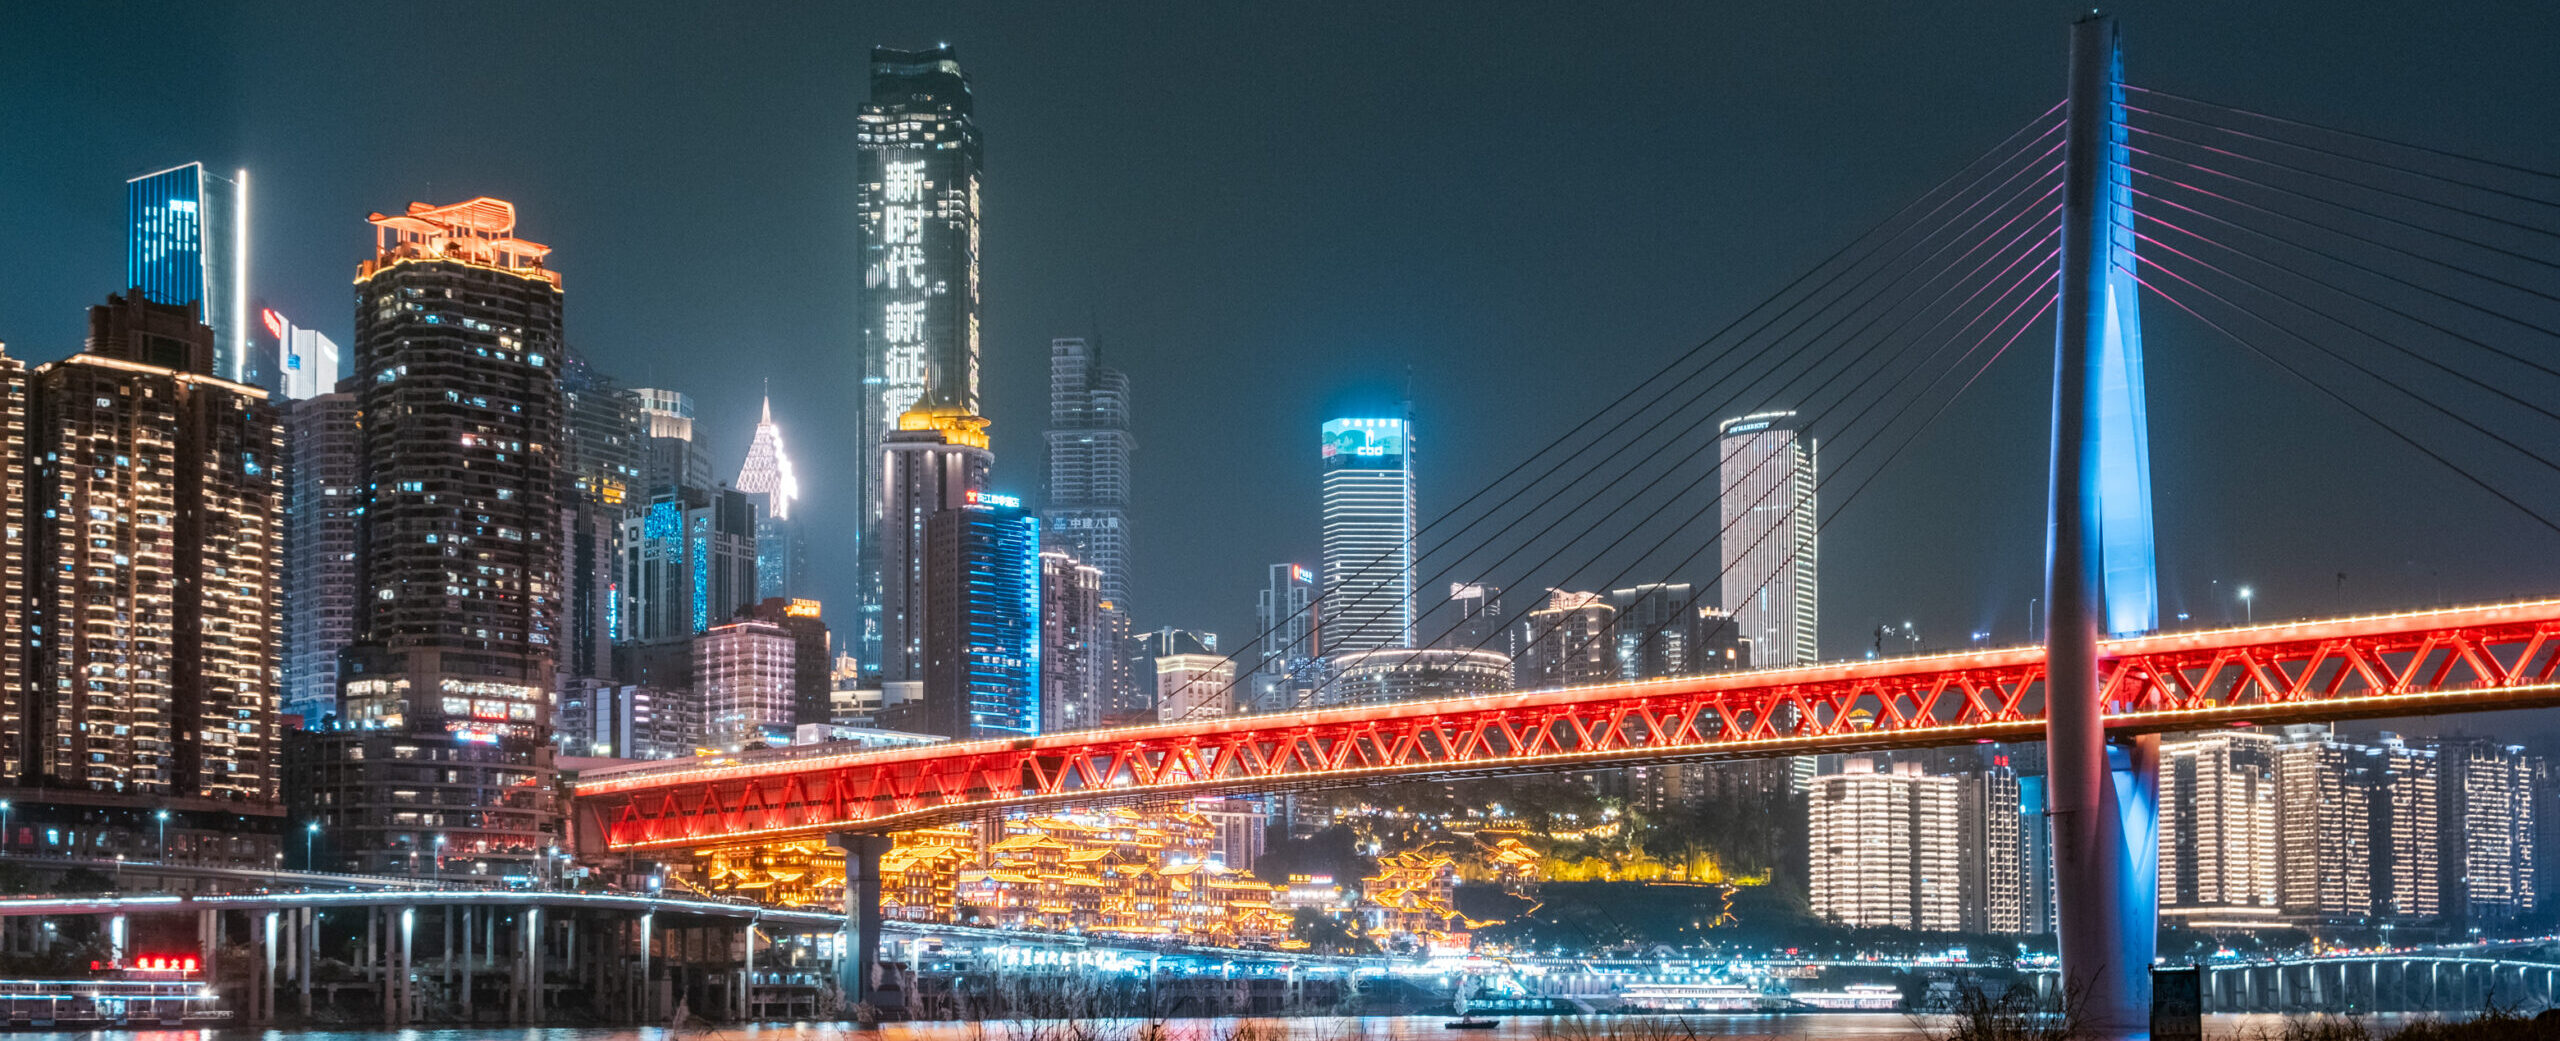 Chongqing – die größte Stadt der Welt